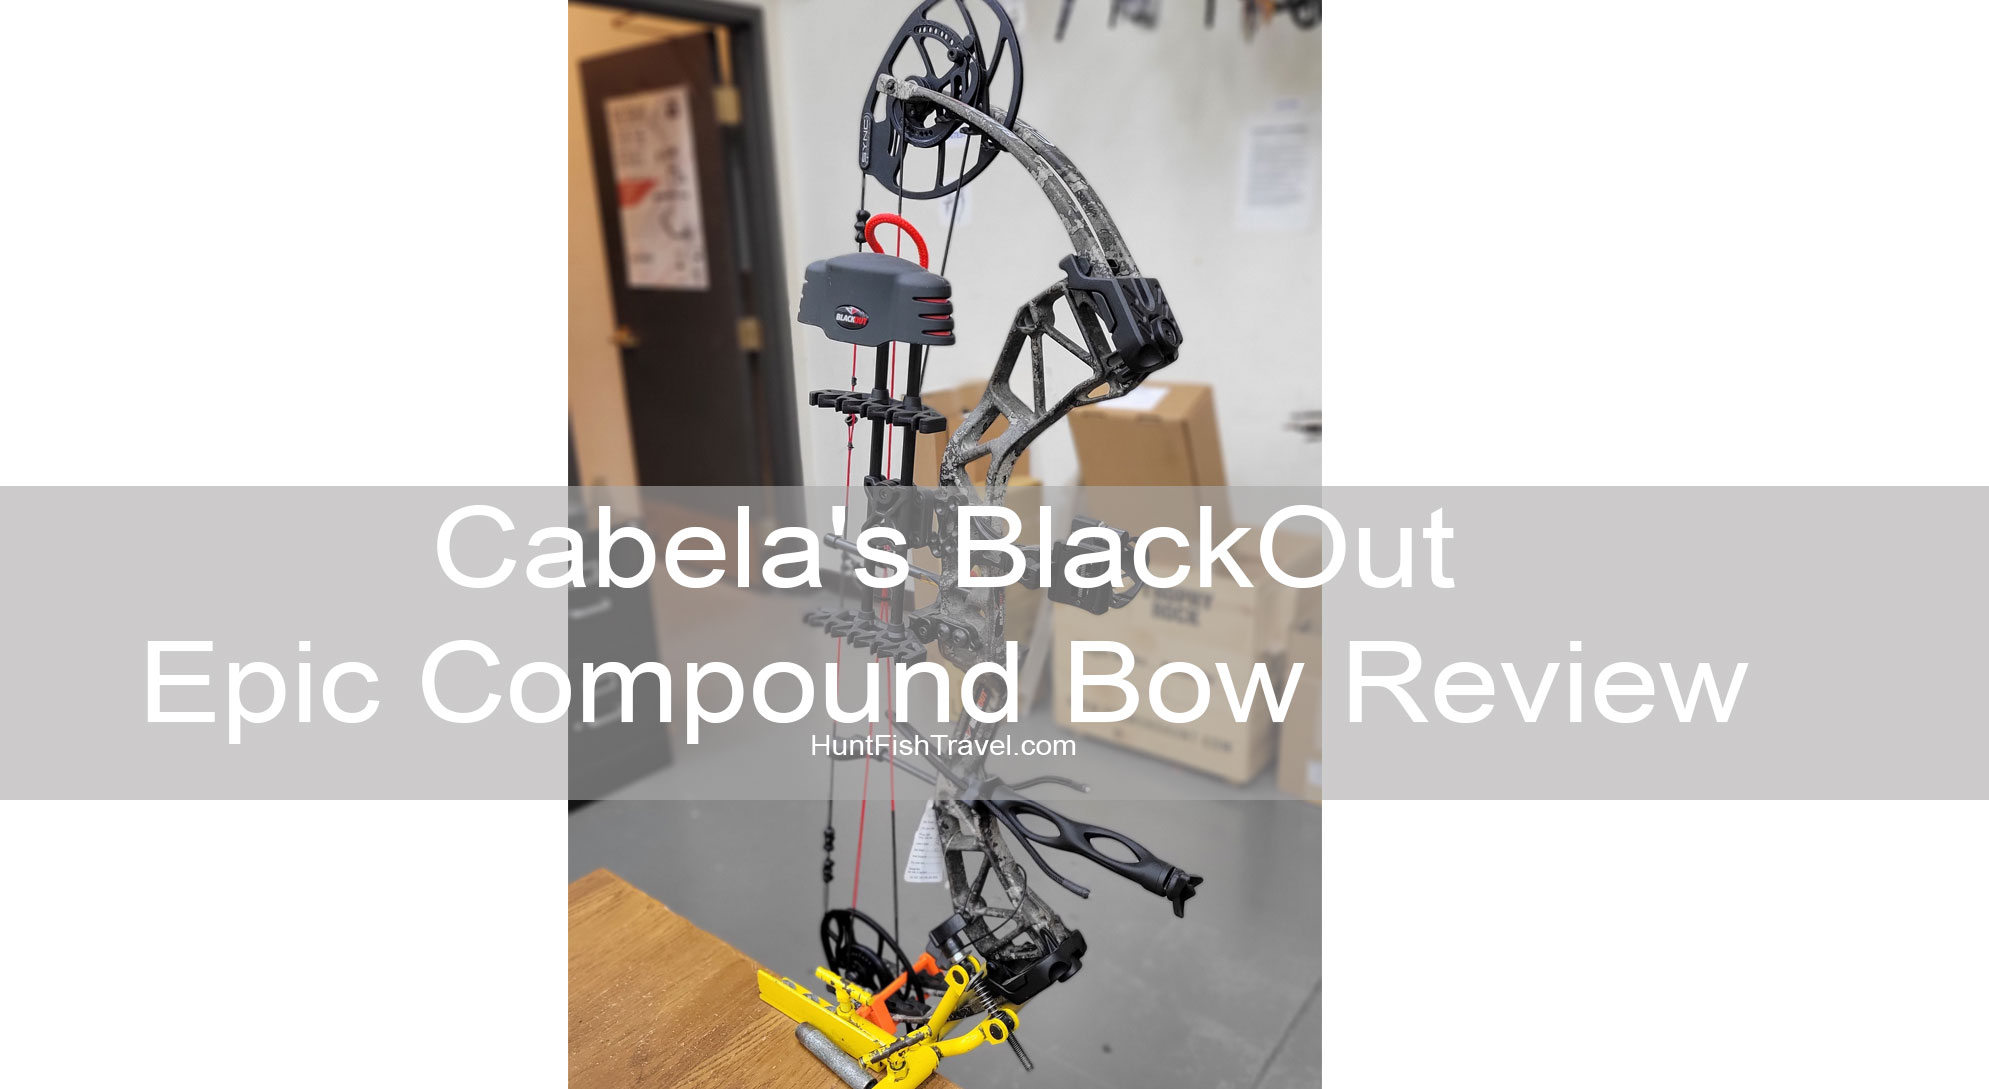 Cabela’s BlackOut Epic Compound Bow Review